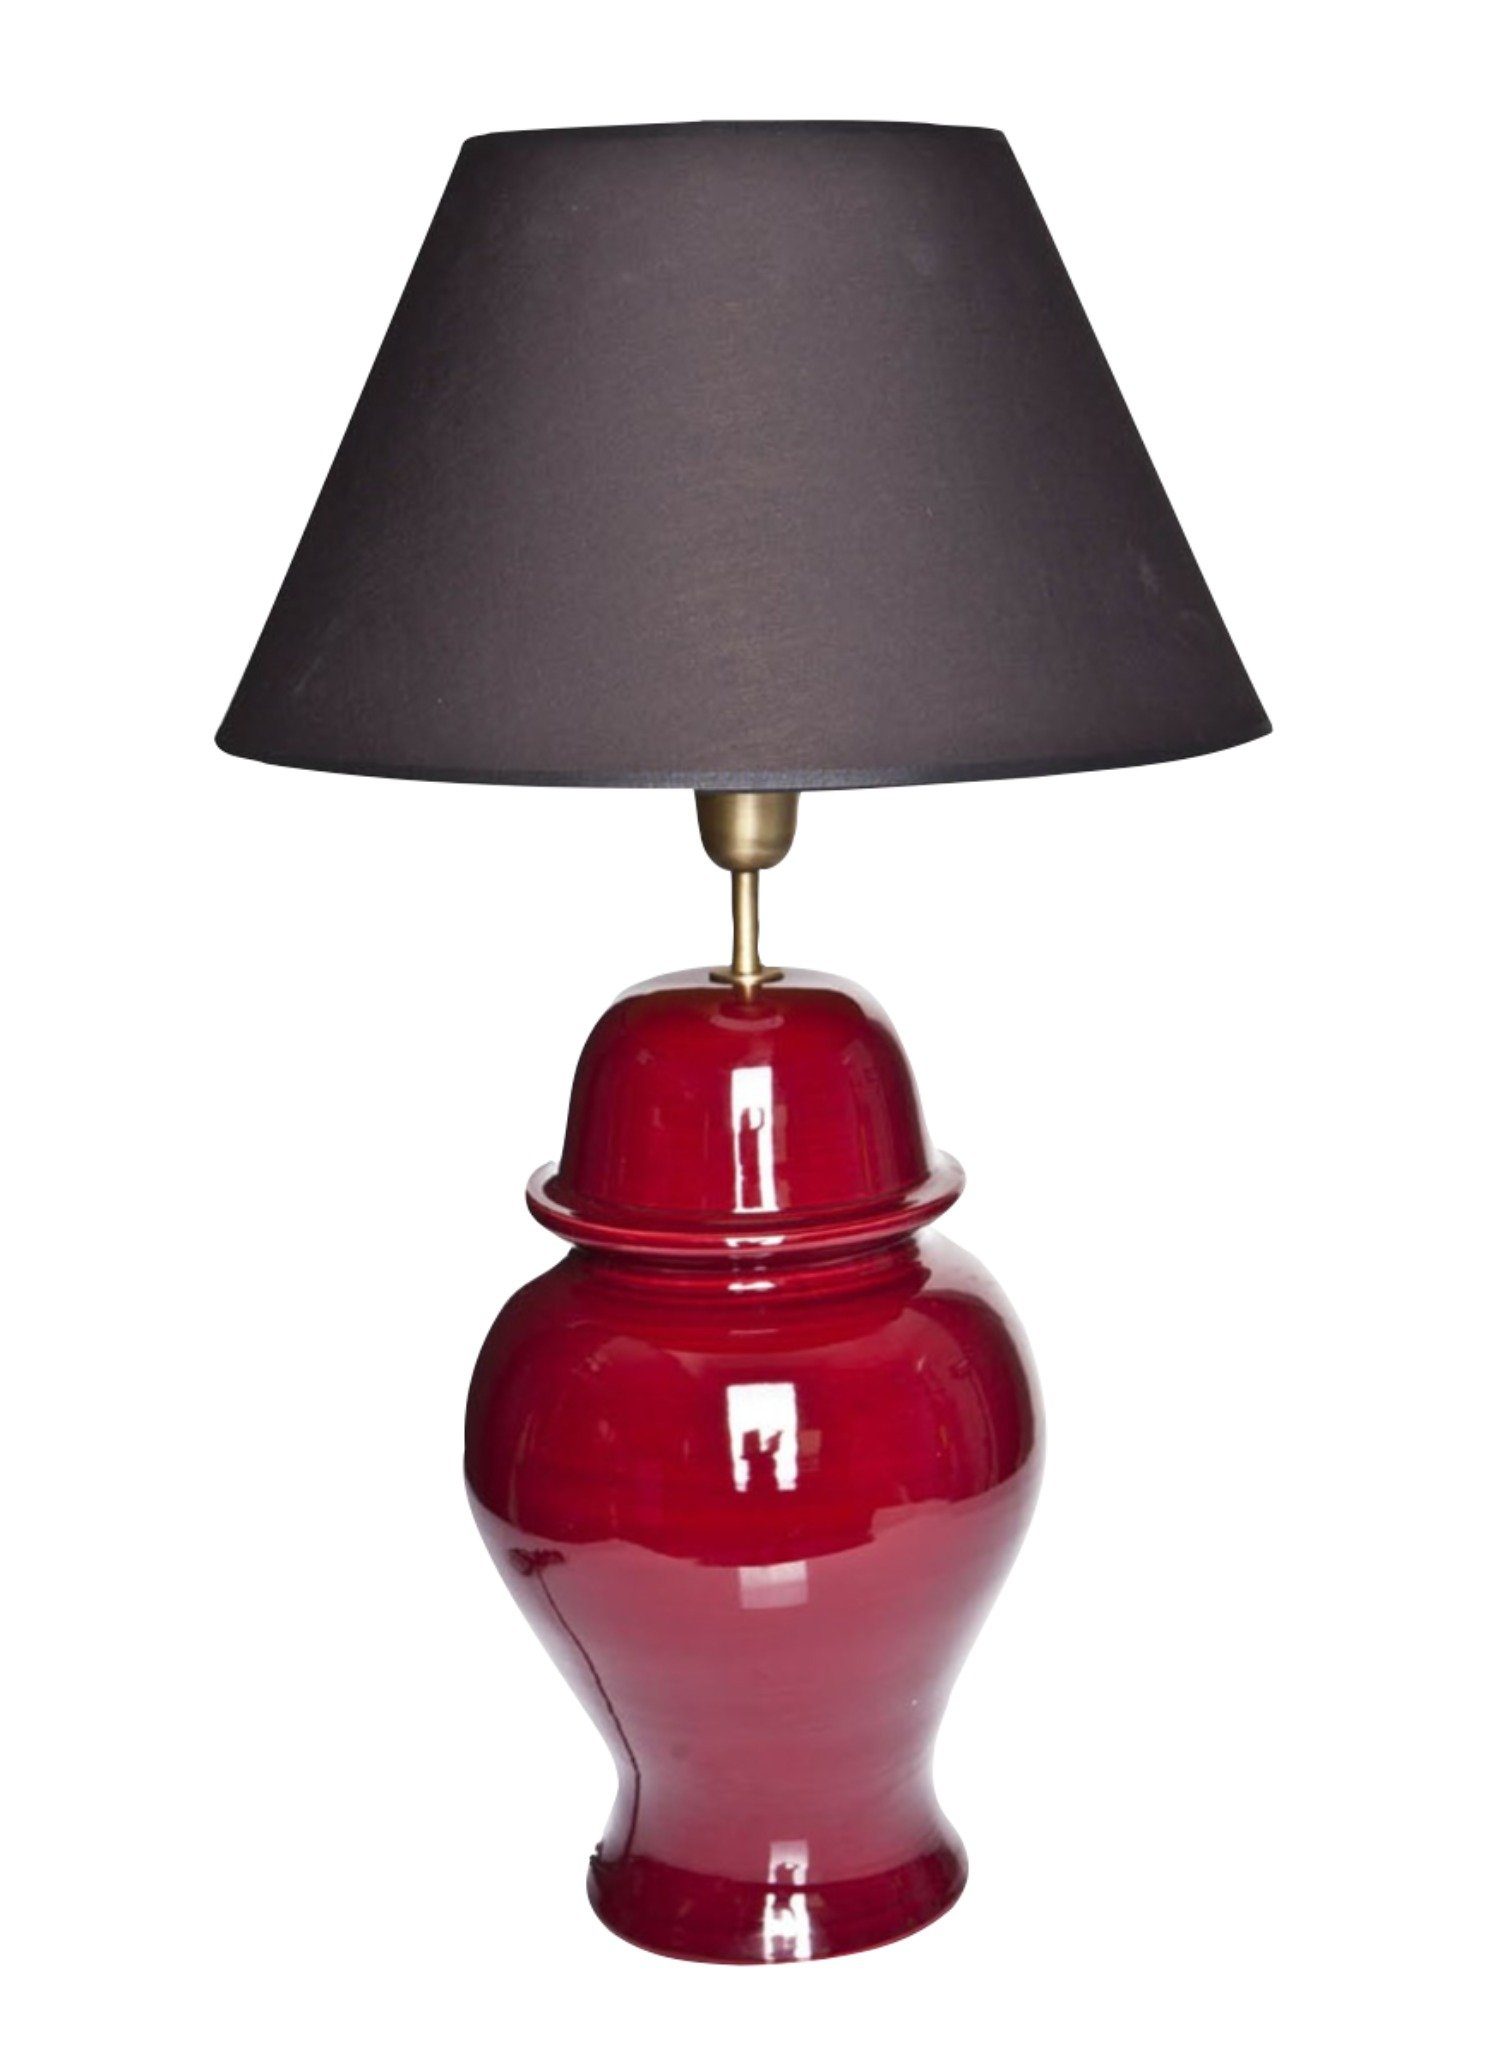 Signature Home Collection Schreibtischlampe, ohne Leuchtmittel, warmweiß, Tischlampe Keramik rot mit Lampenschirm | Tischlampen